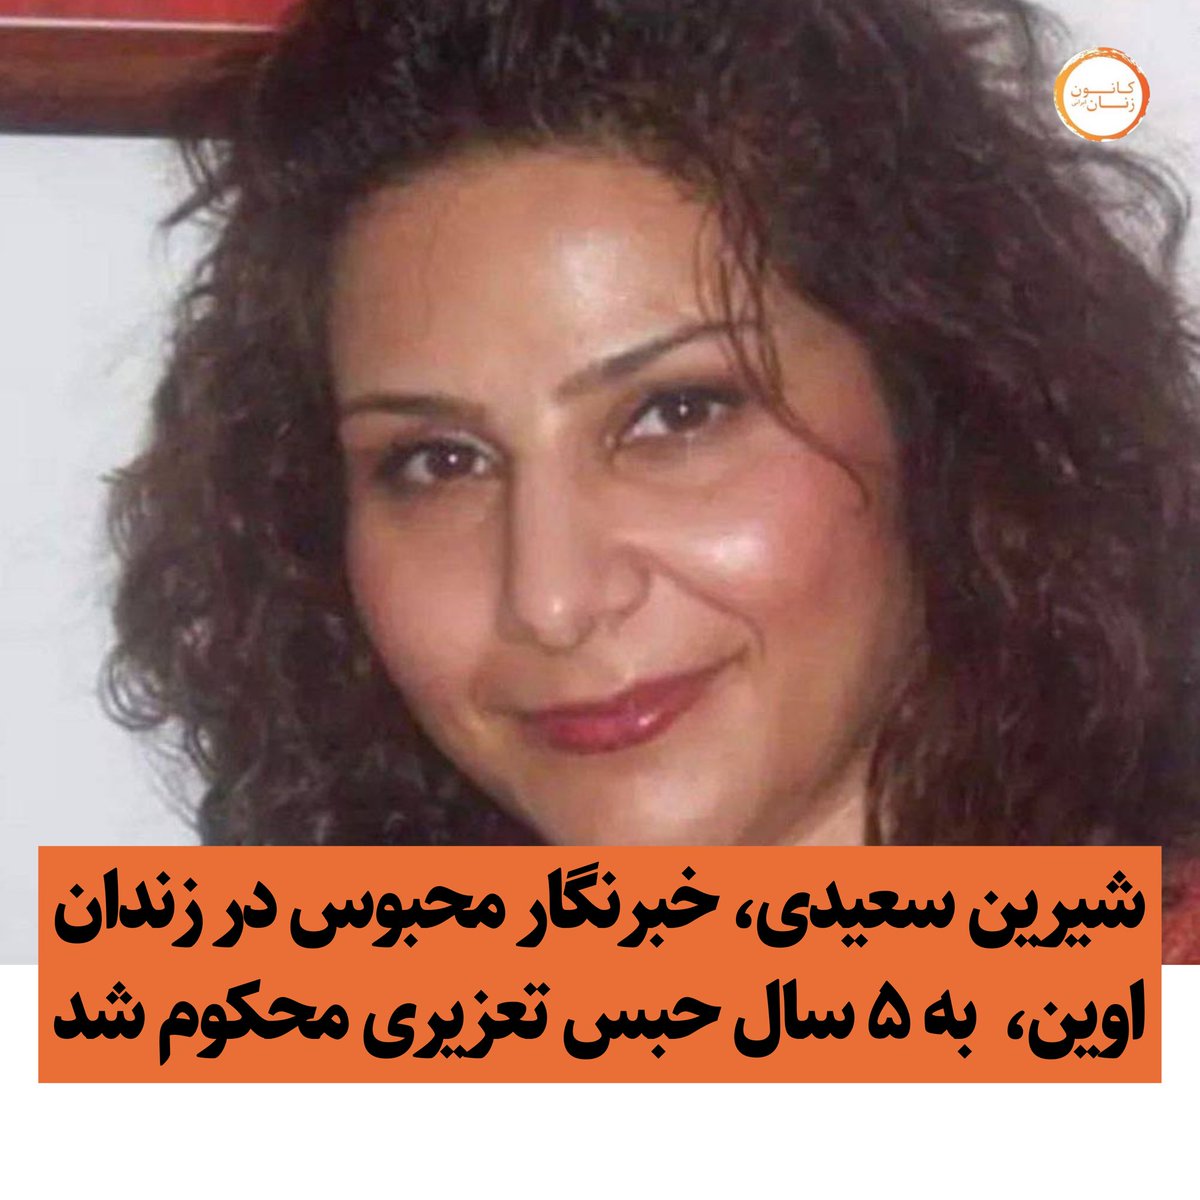 شیرین سعیدی، خبرنگار محبوس در زندان اوین در دادگاه انقلاب تهران به ریاست صلواتی به اتهام «اجتماع و تبانی به قصد اقدام علیه امنیت ملی» به ۵ سال حبس تعزیری محکوم شد.
 #شیرین_سعیدی